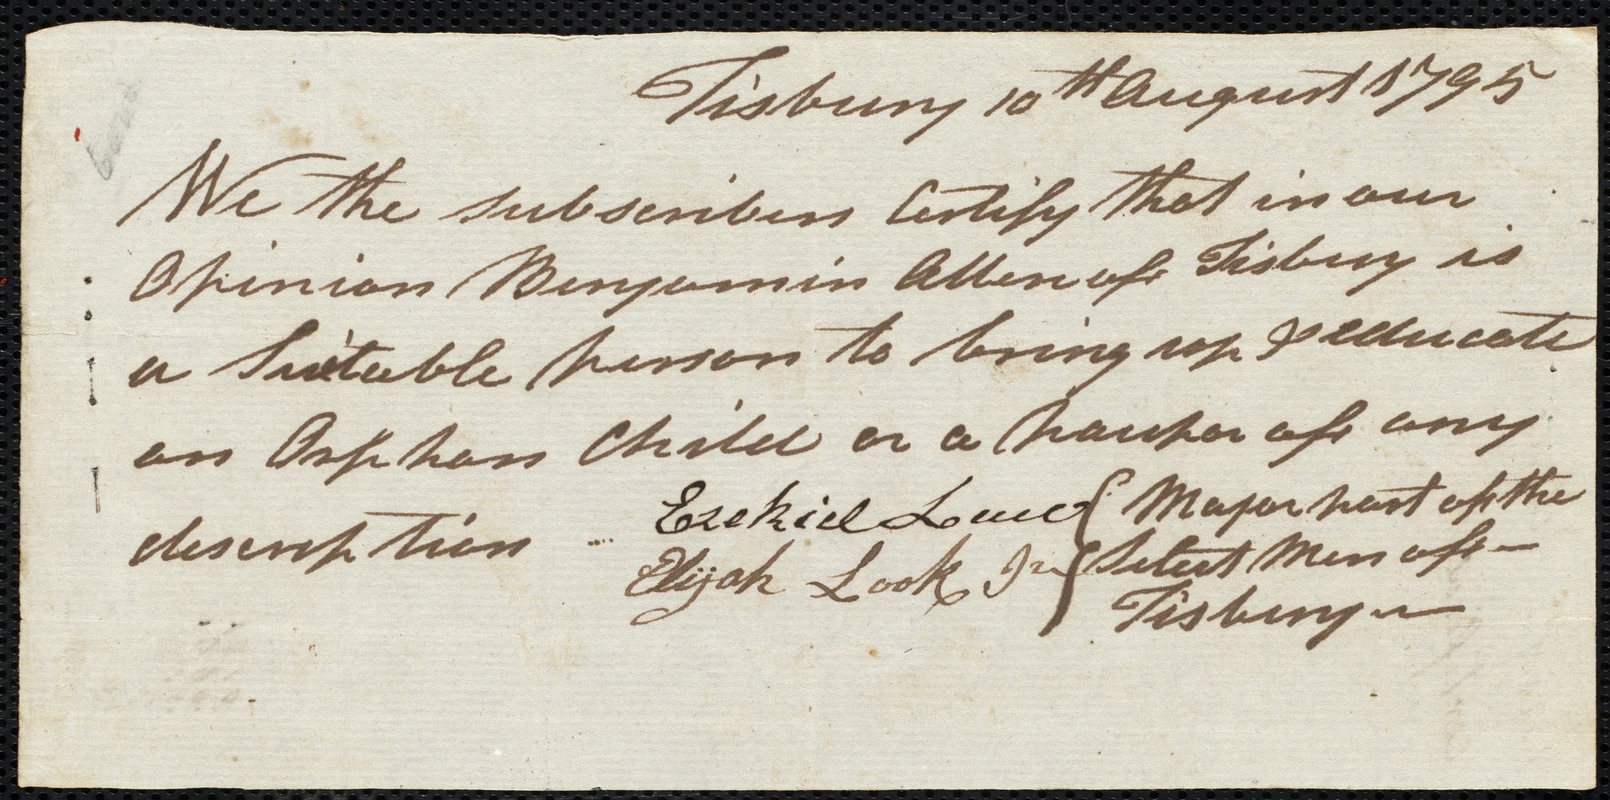 James Gordon indentured to apprentice with Benjamin Allen of Tisbury, 25 August 1795